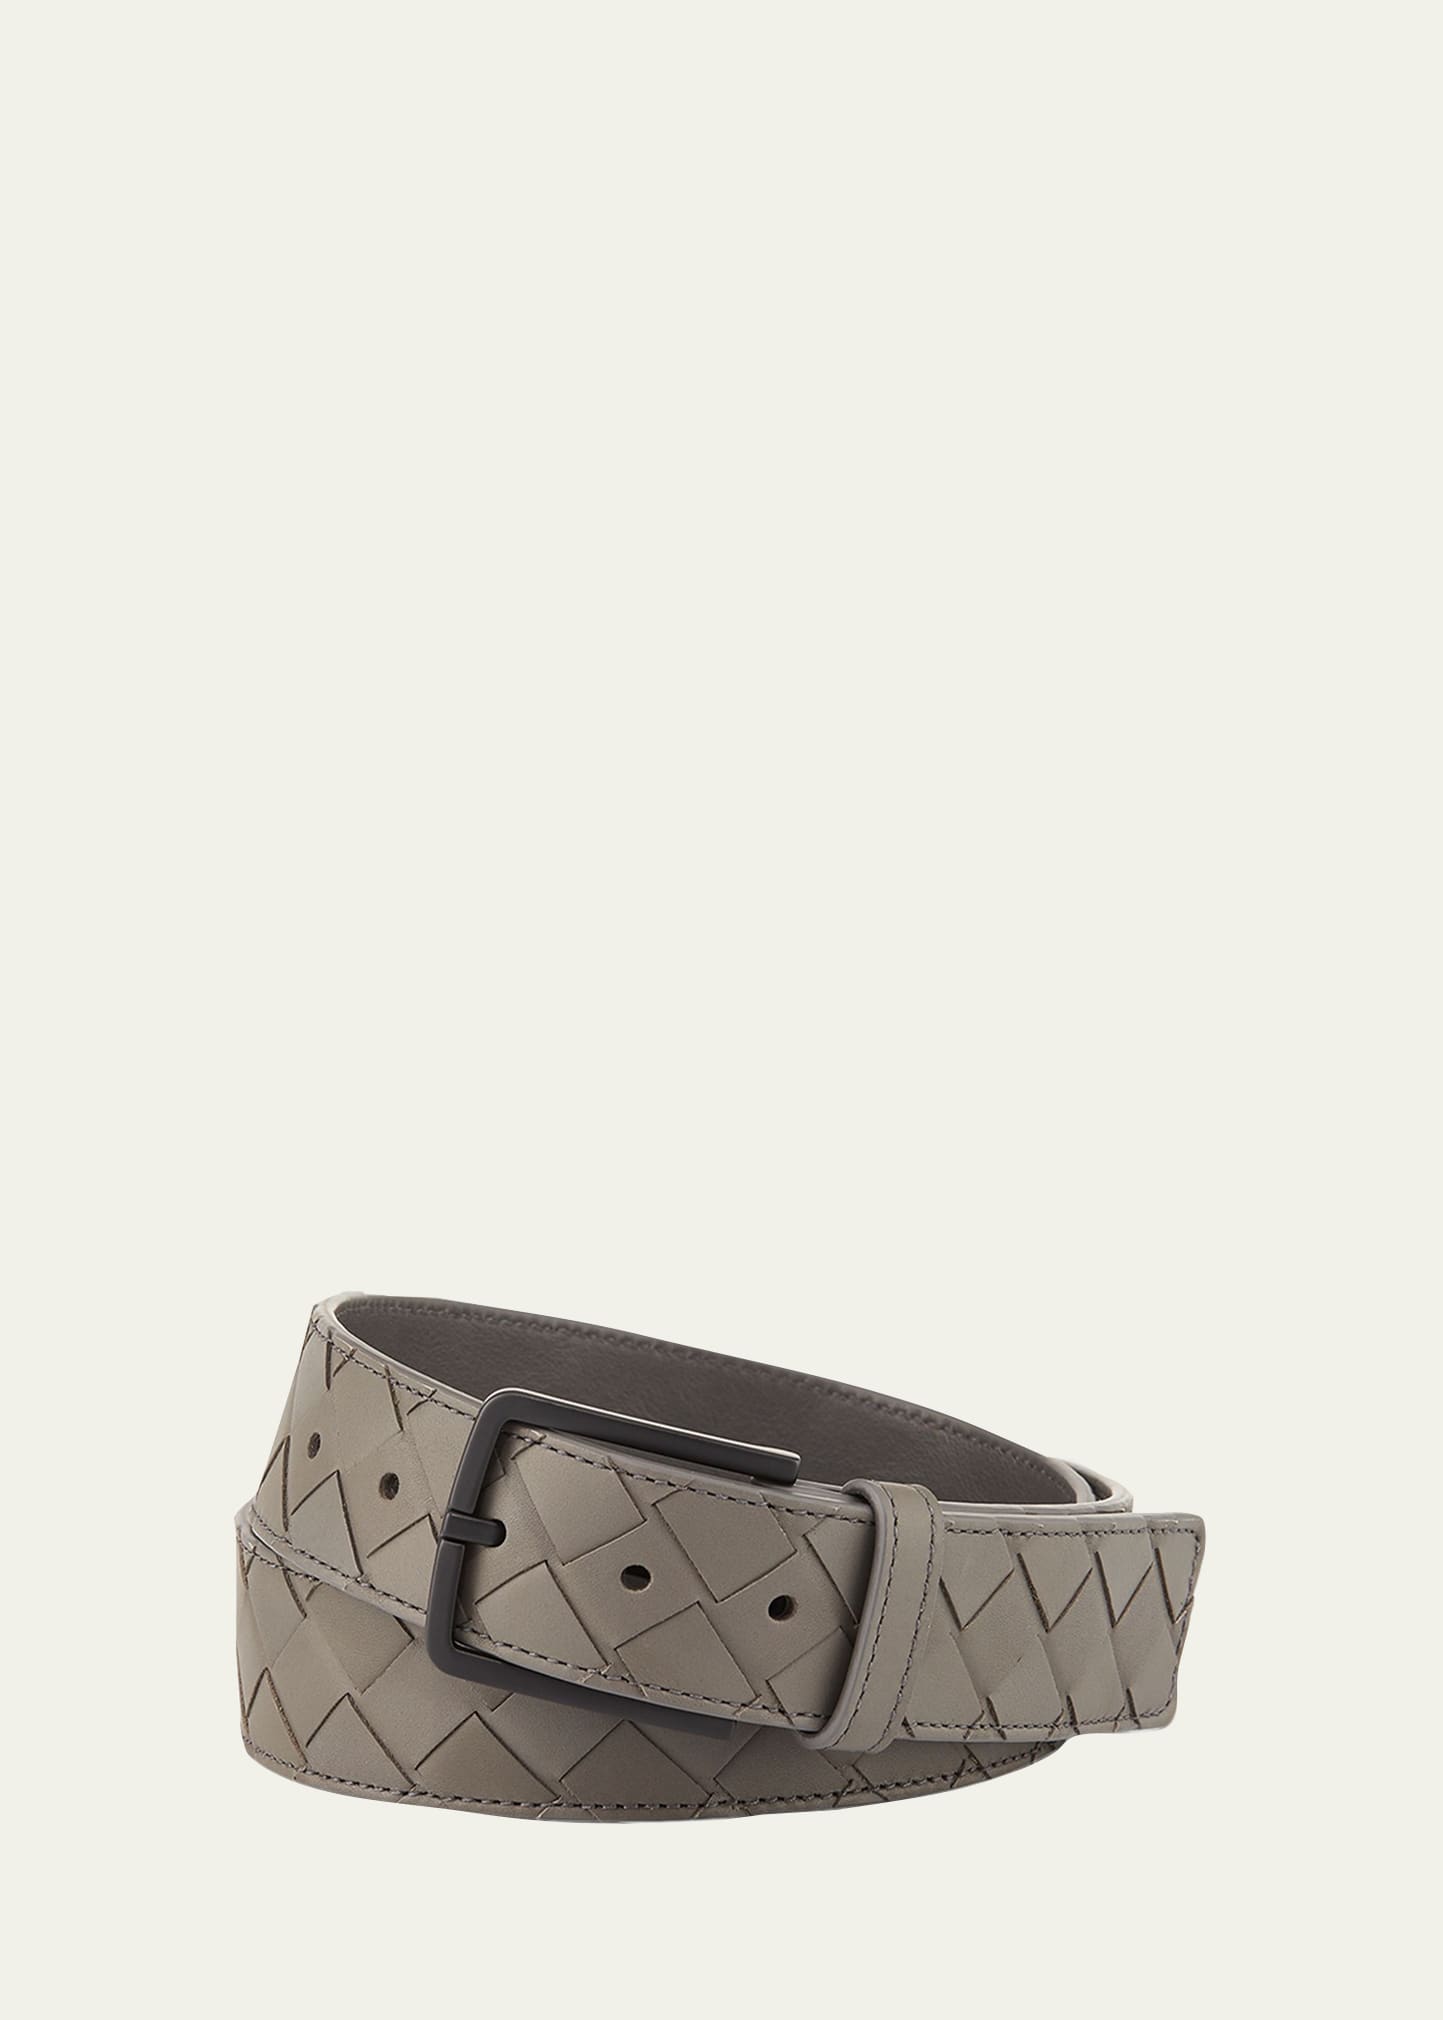 Bottega Veneta Men's Cintura Intrecciato Leather Belt In Gray